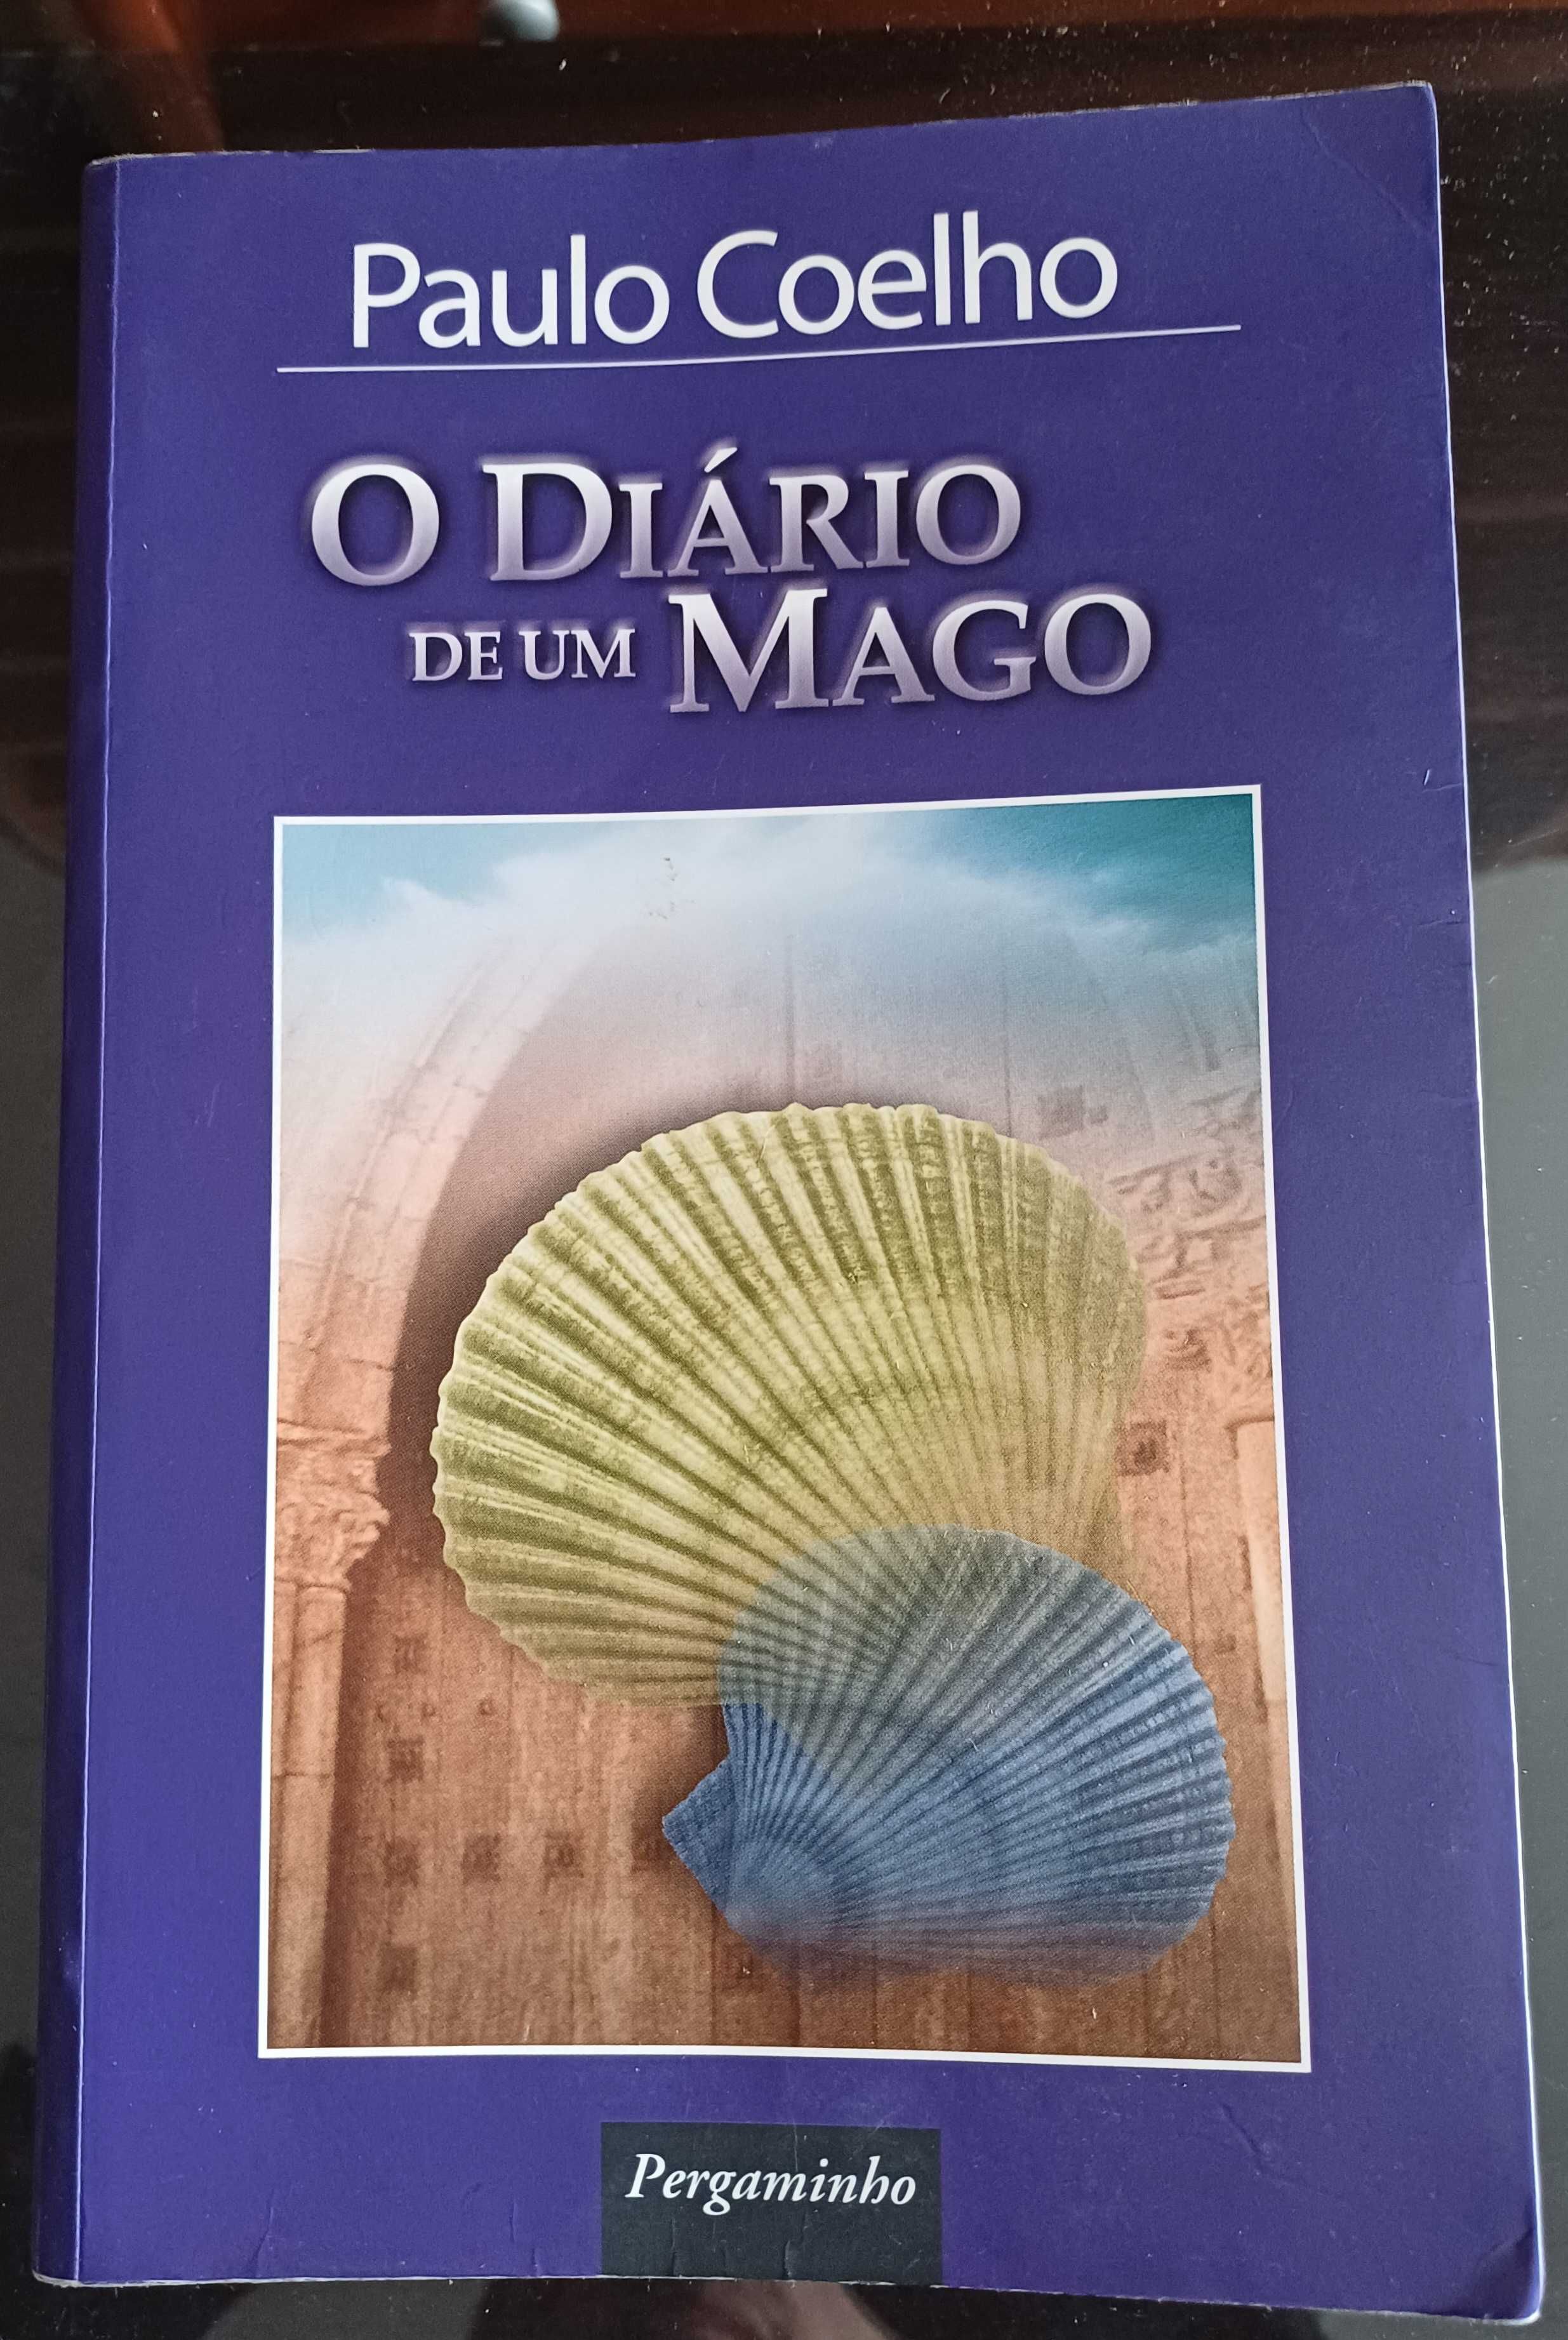 Paulo Coelho - O Diário de um Mago